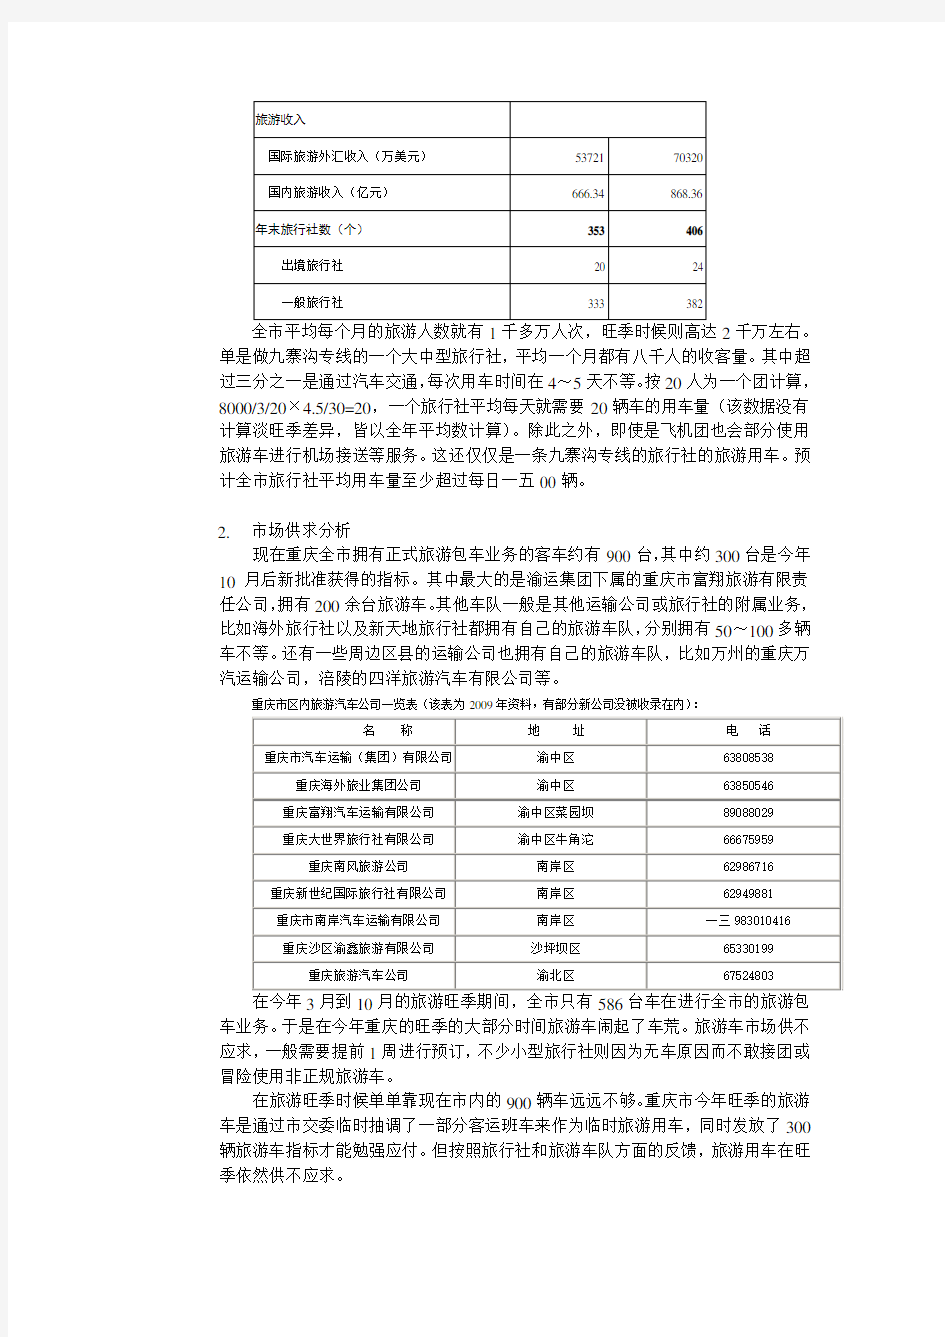 关于重庆旅游包车客运的市场调查报告